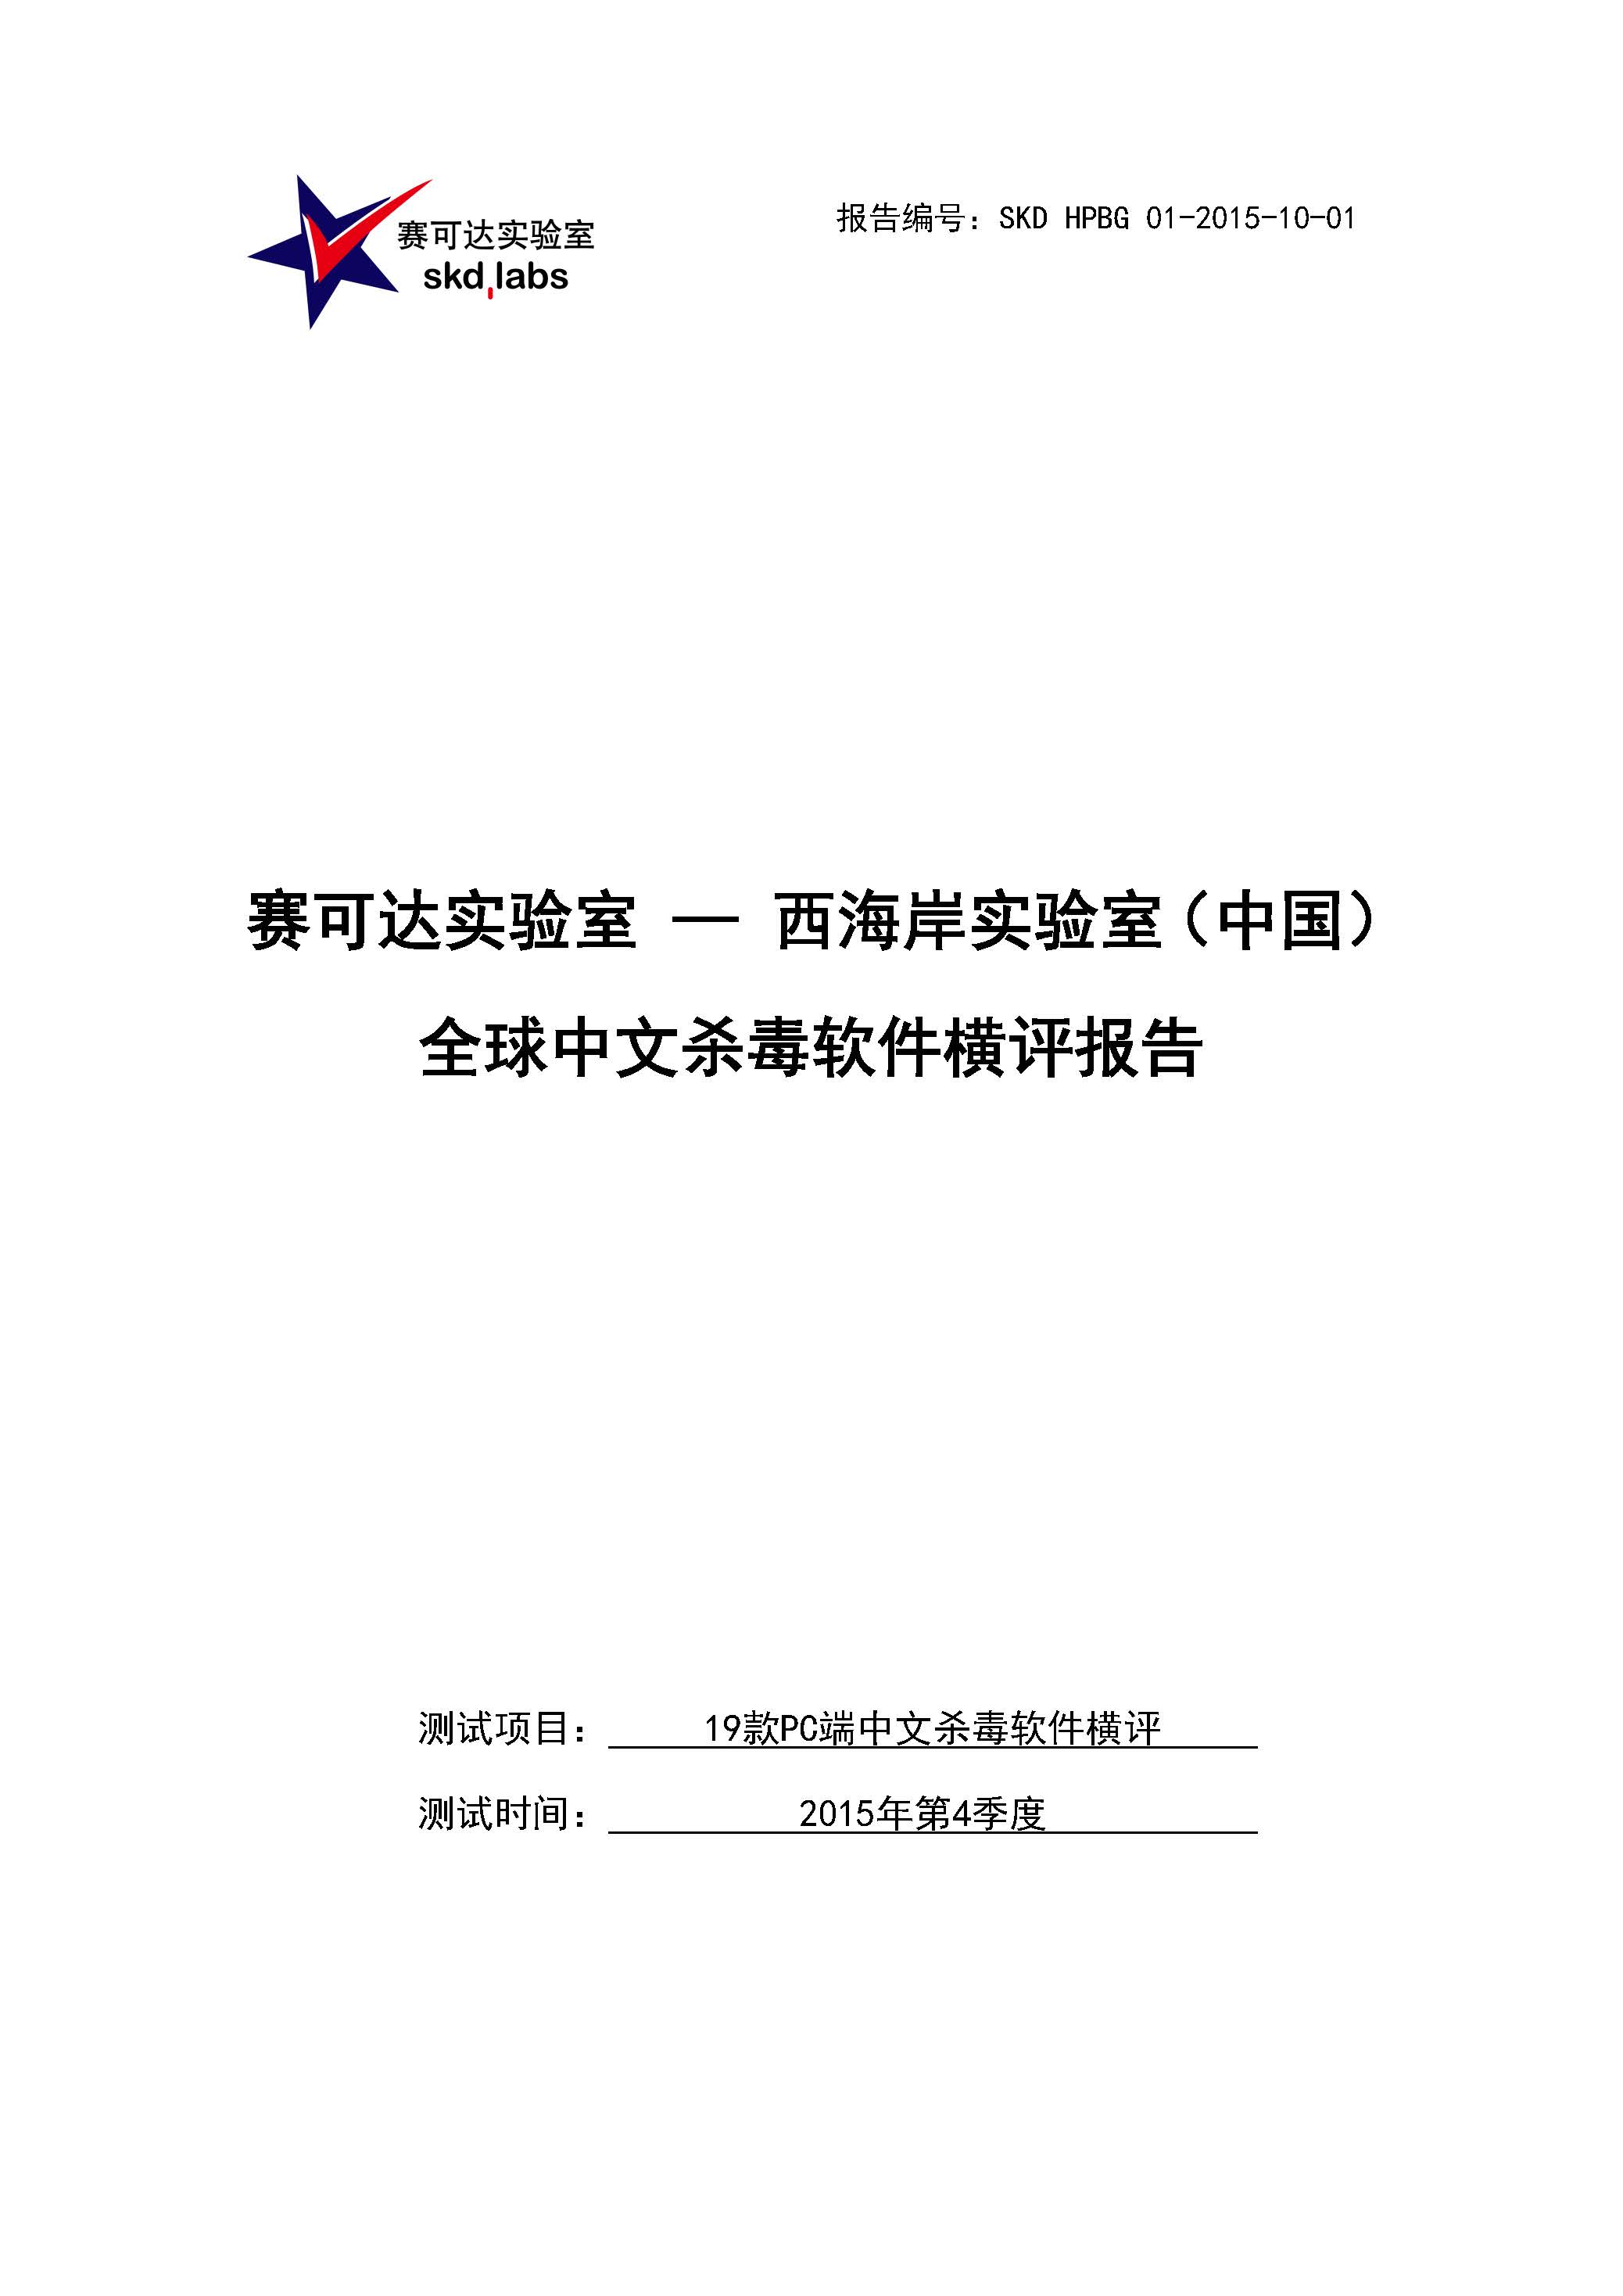 中文PC杀毒软件横评测试报告- Windows 8.1【中文版】.pdf (_Page_01.jpg